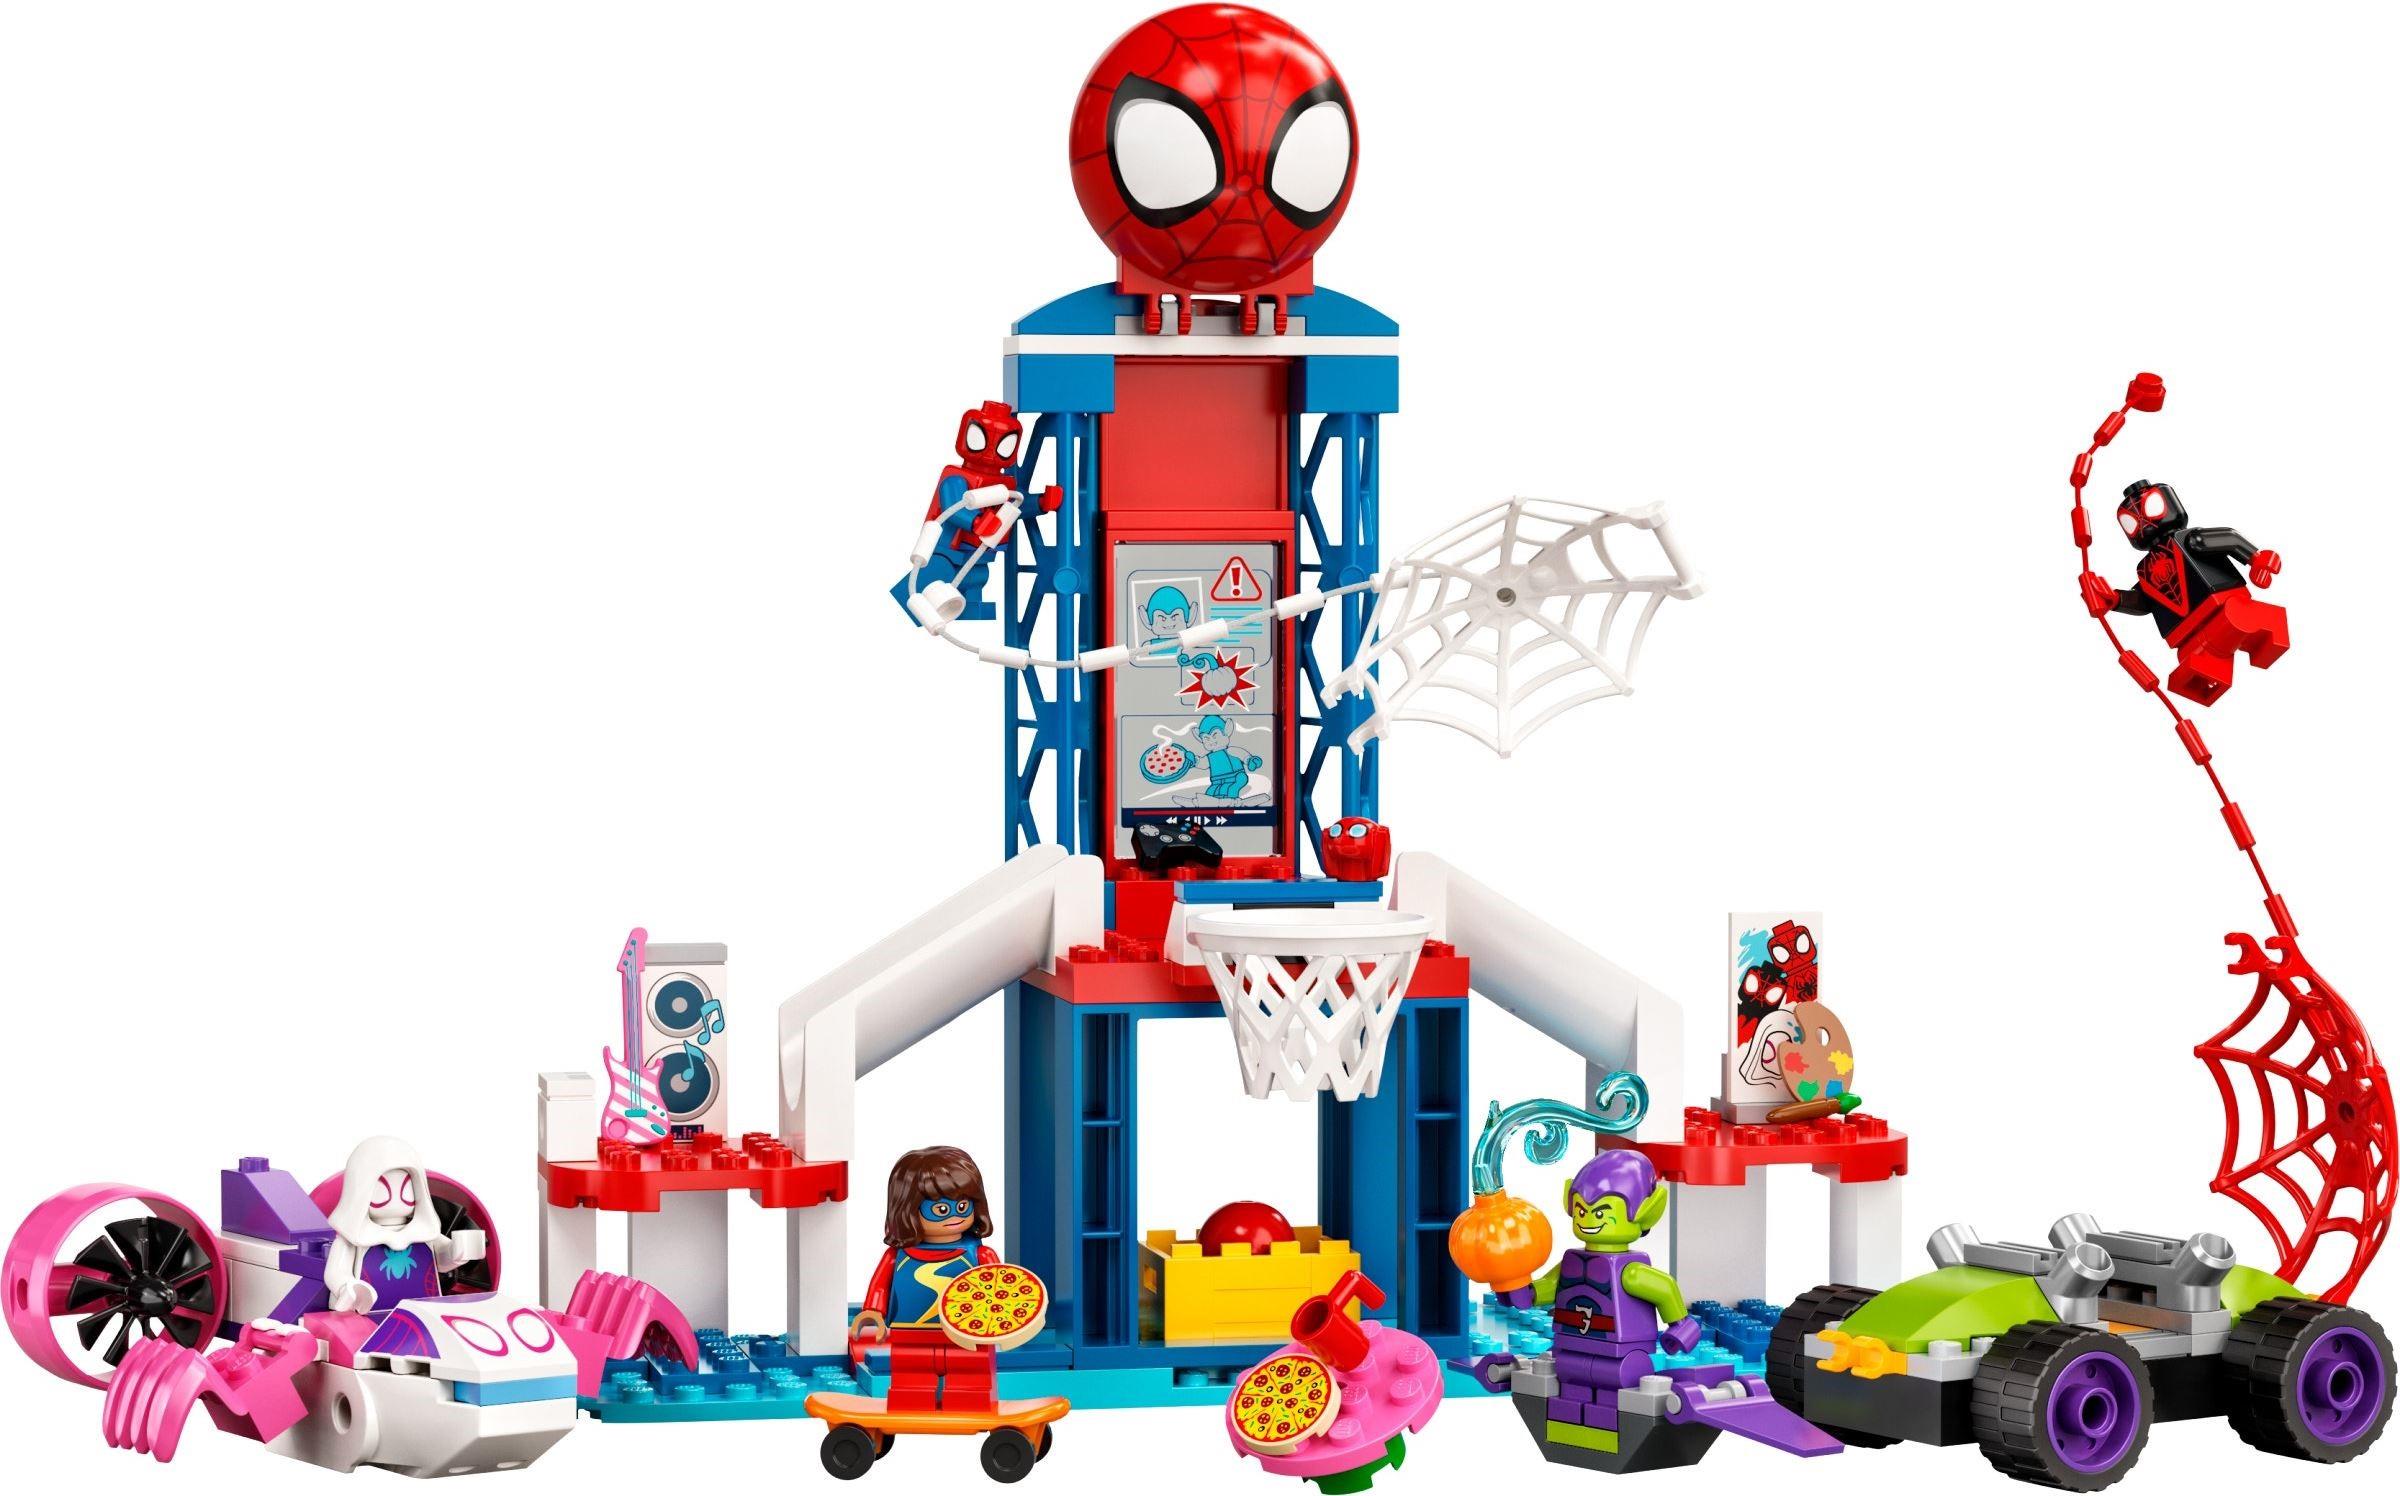 LEGO Super Heroes Green Goblin Figur Minifigur Spider Man Spidey Miles 10784